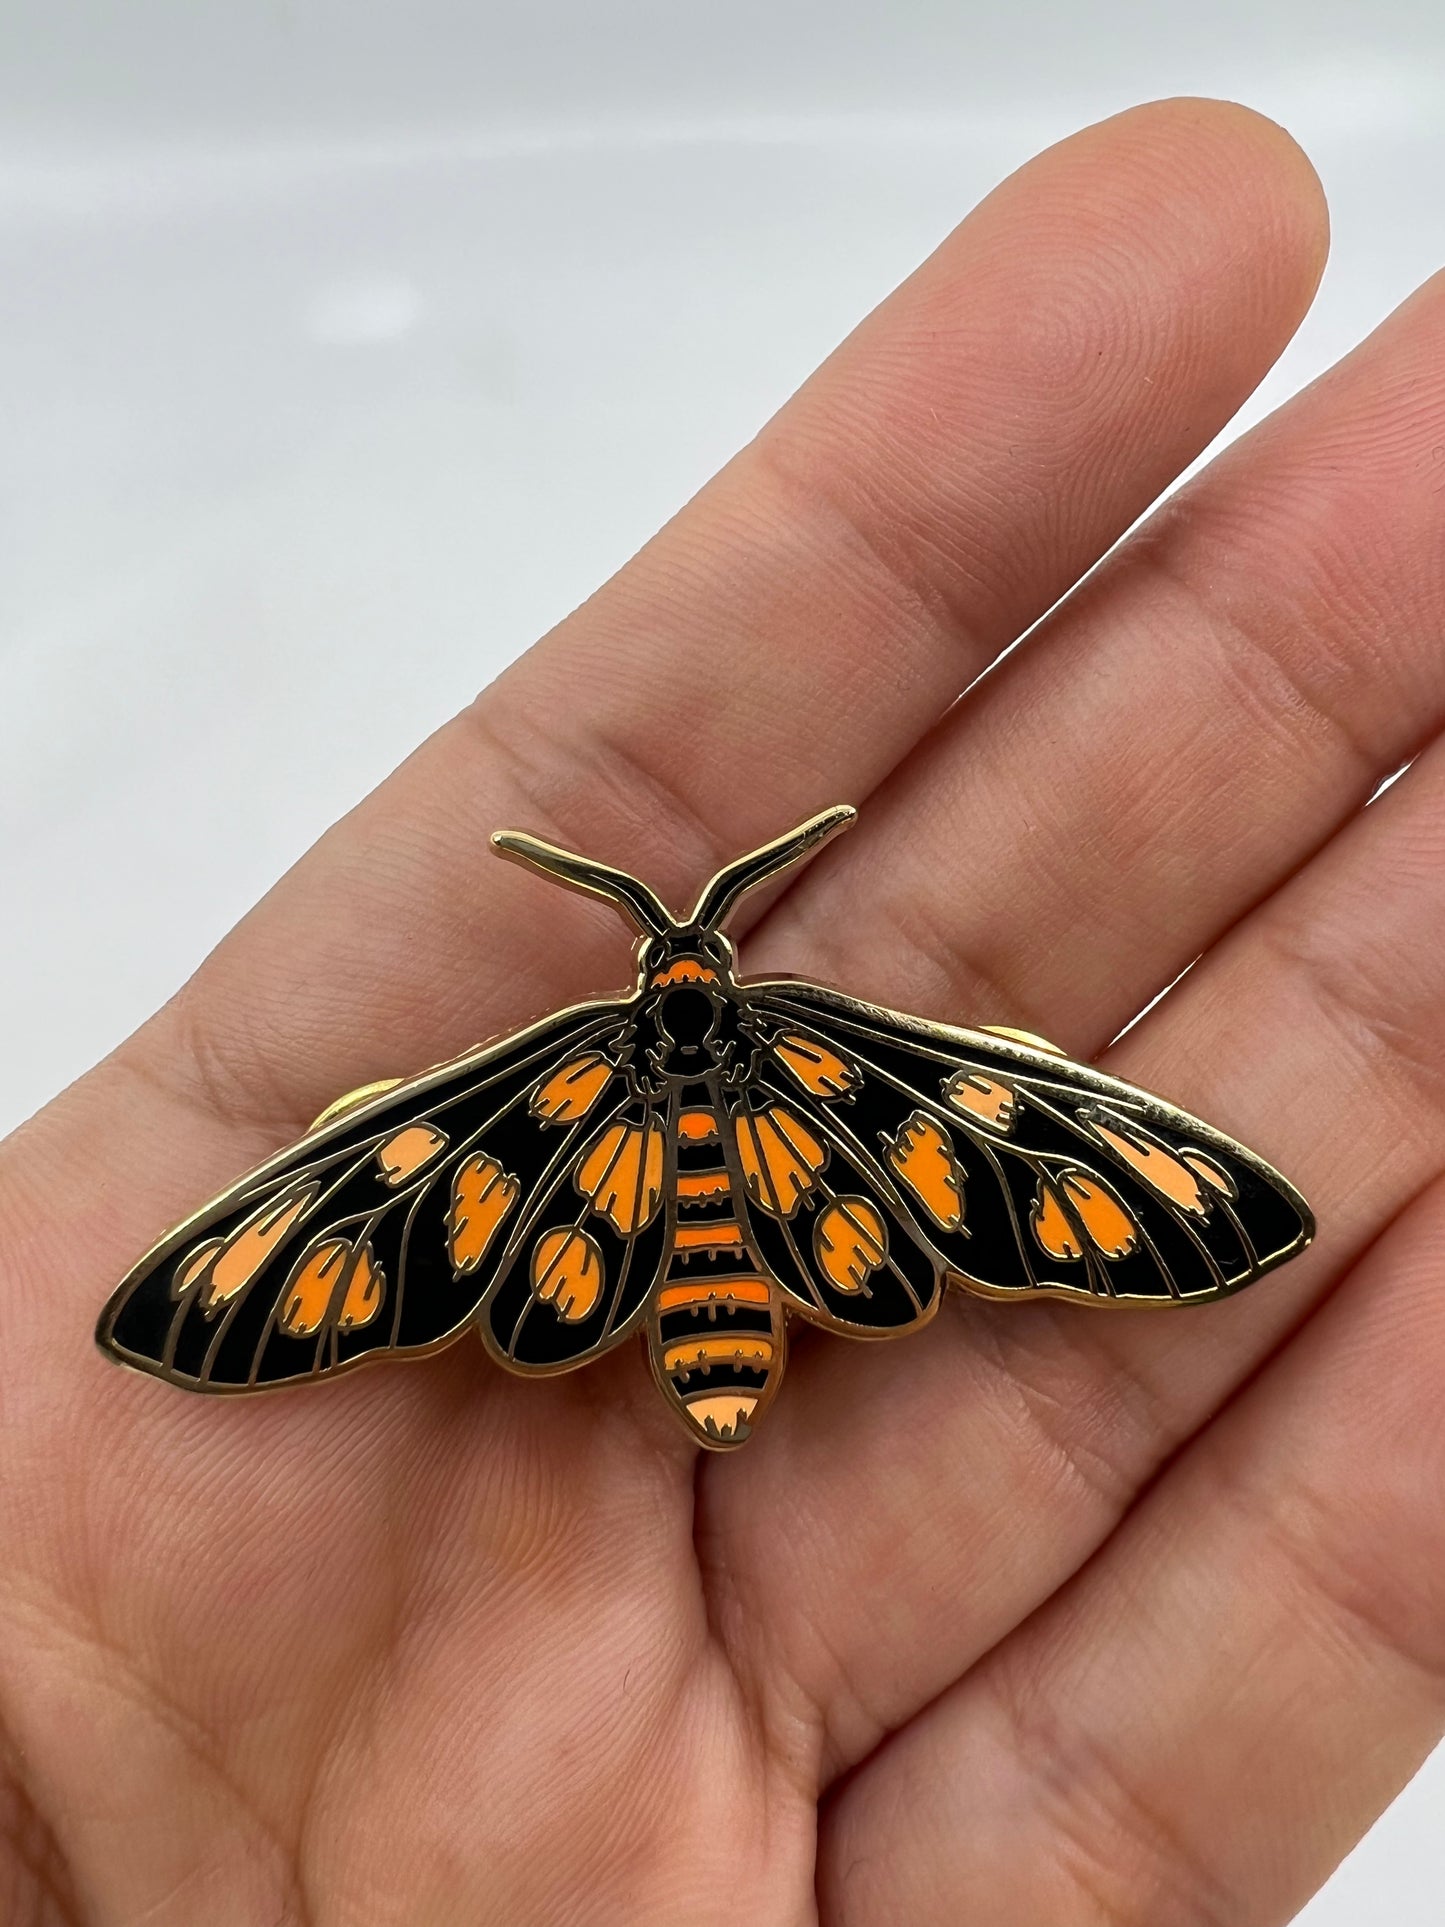 Tiger Moth pin